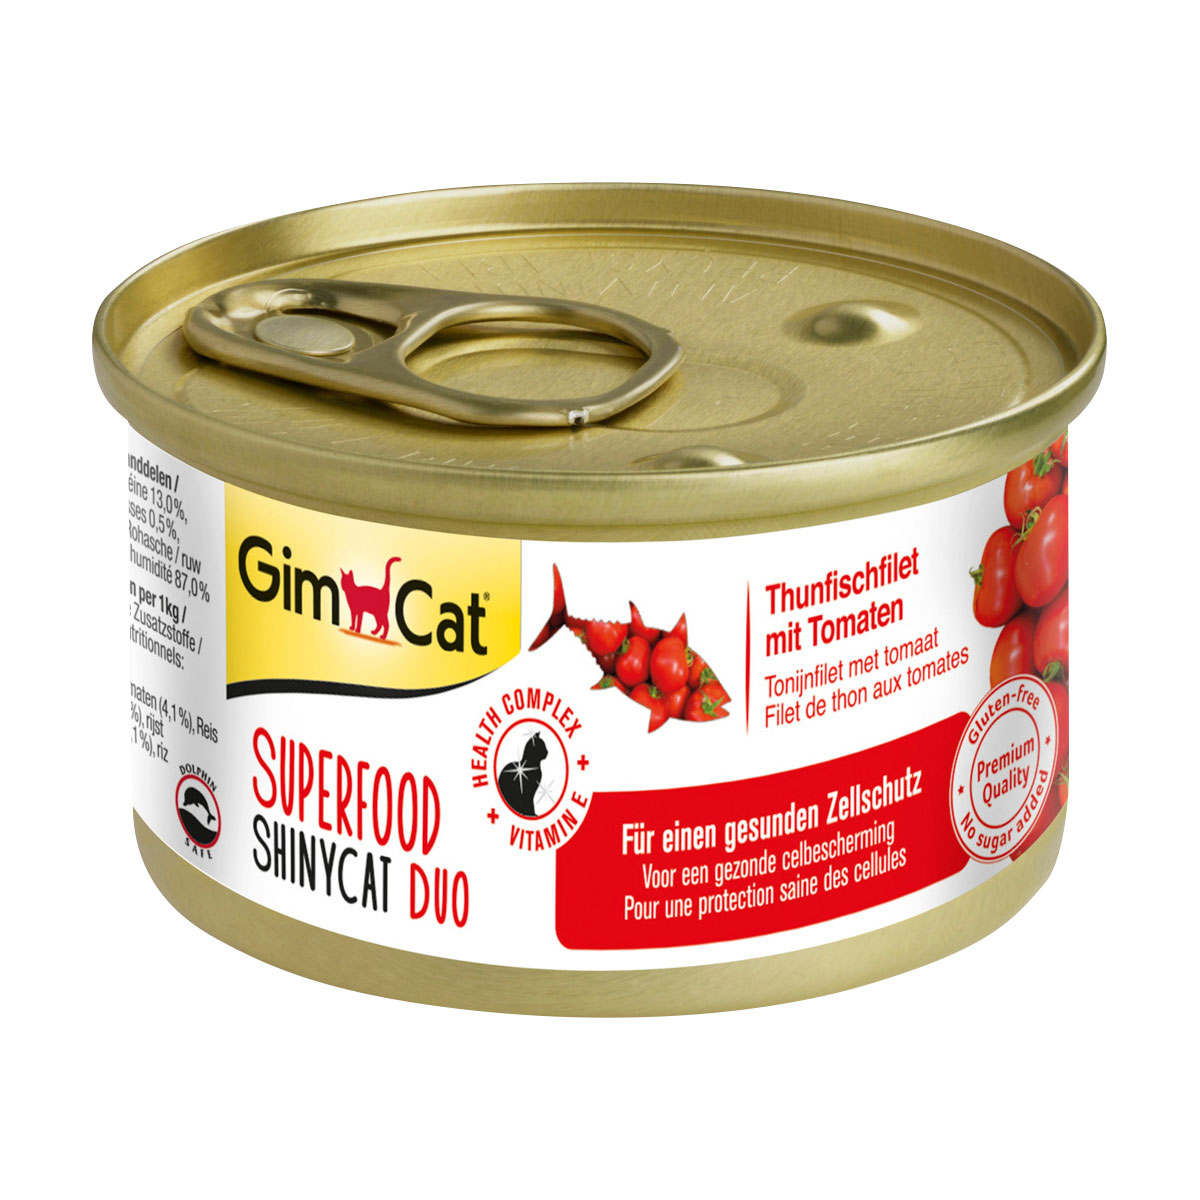 GimCat Superfood ShinyCat Duo tuňákový filet s rajčaty